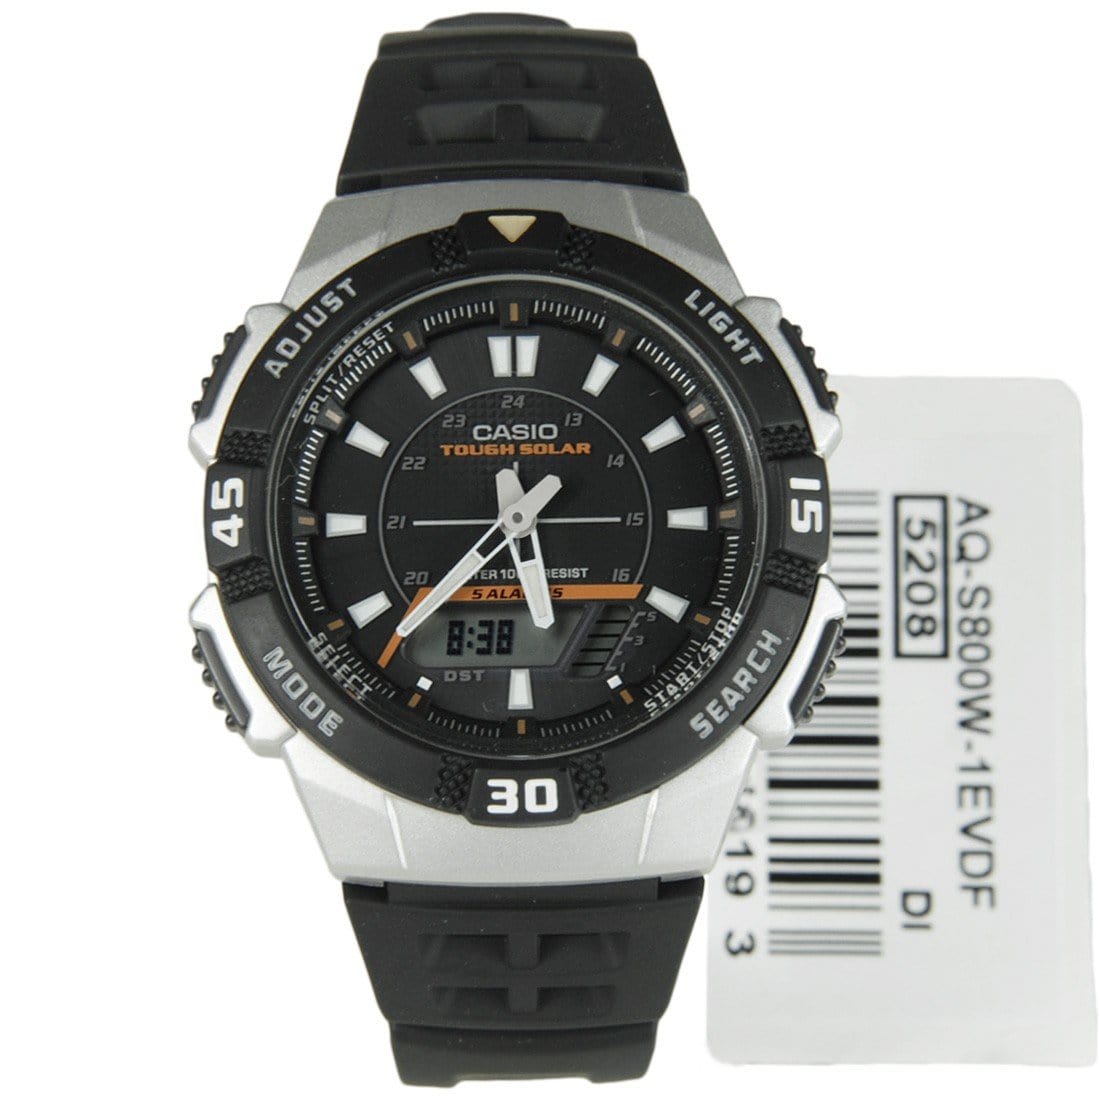 Casio Tough Solar Sports Watch AQ-S800W-1EVDF AQ-S800W-1E - Watch Keepers